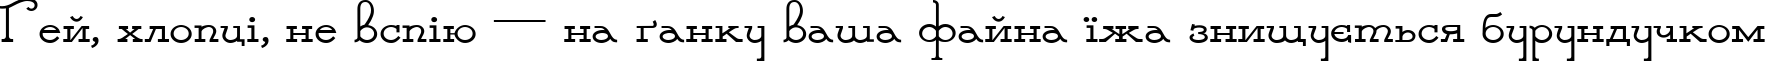 Пример написания шрифтом Parnas Deco текста на украинском